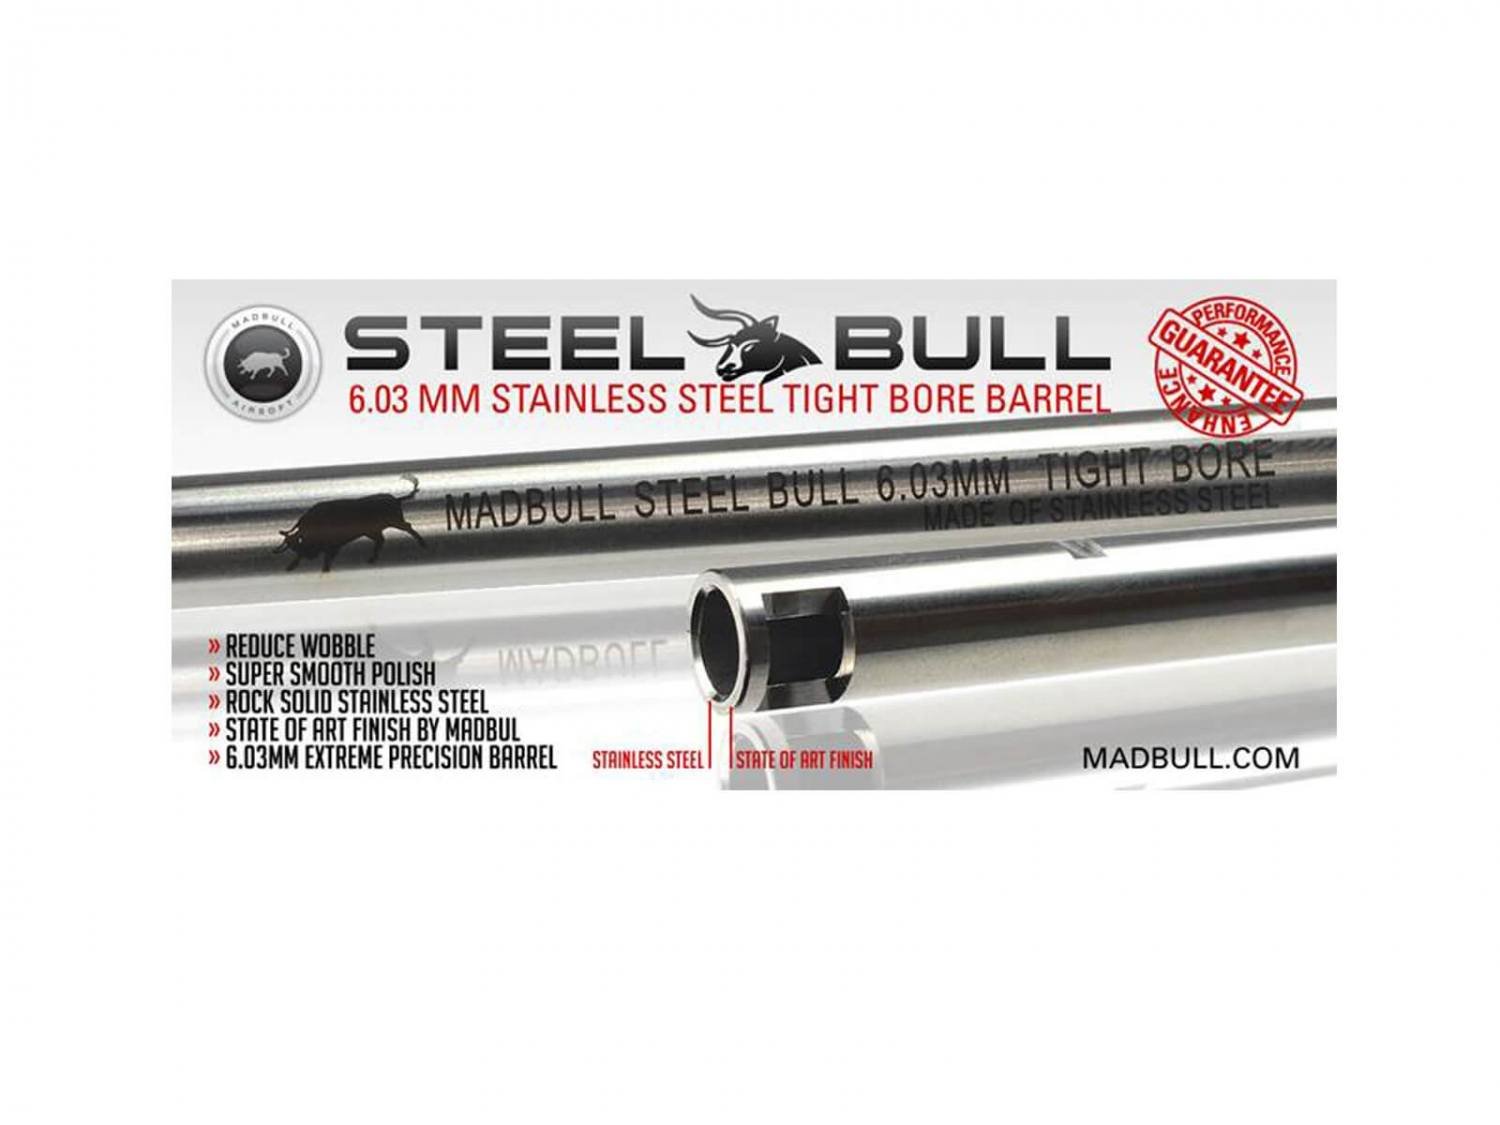 Madbull SteelBull lb, 455 mm